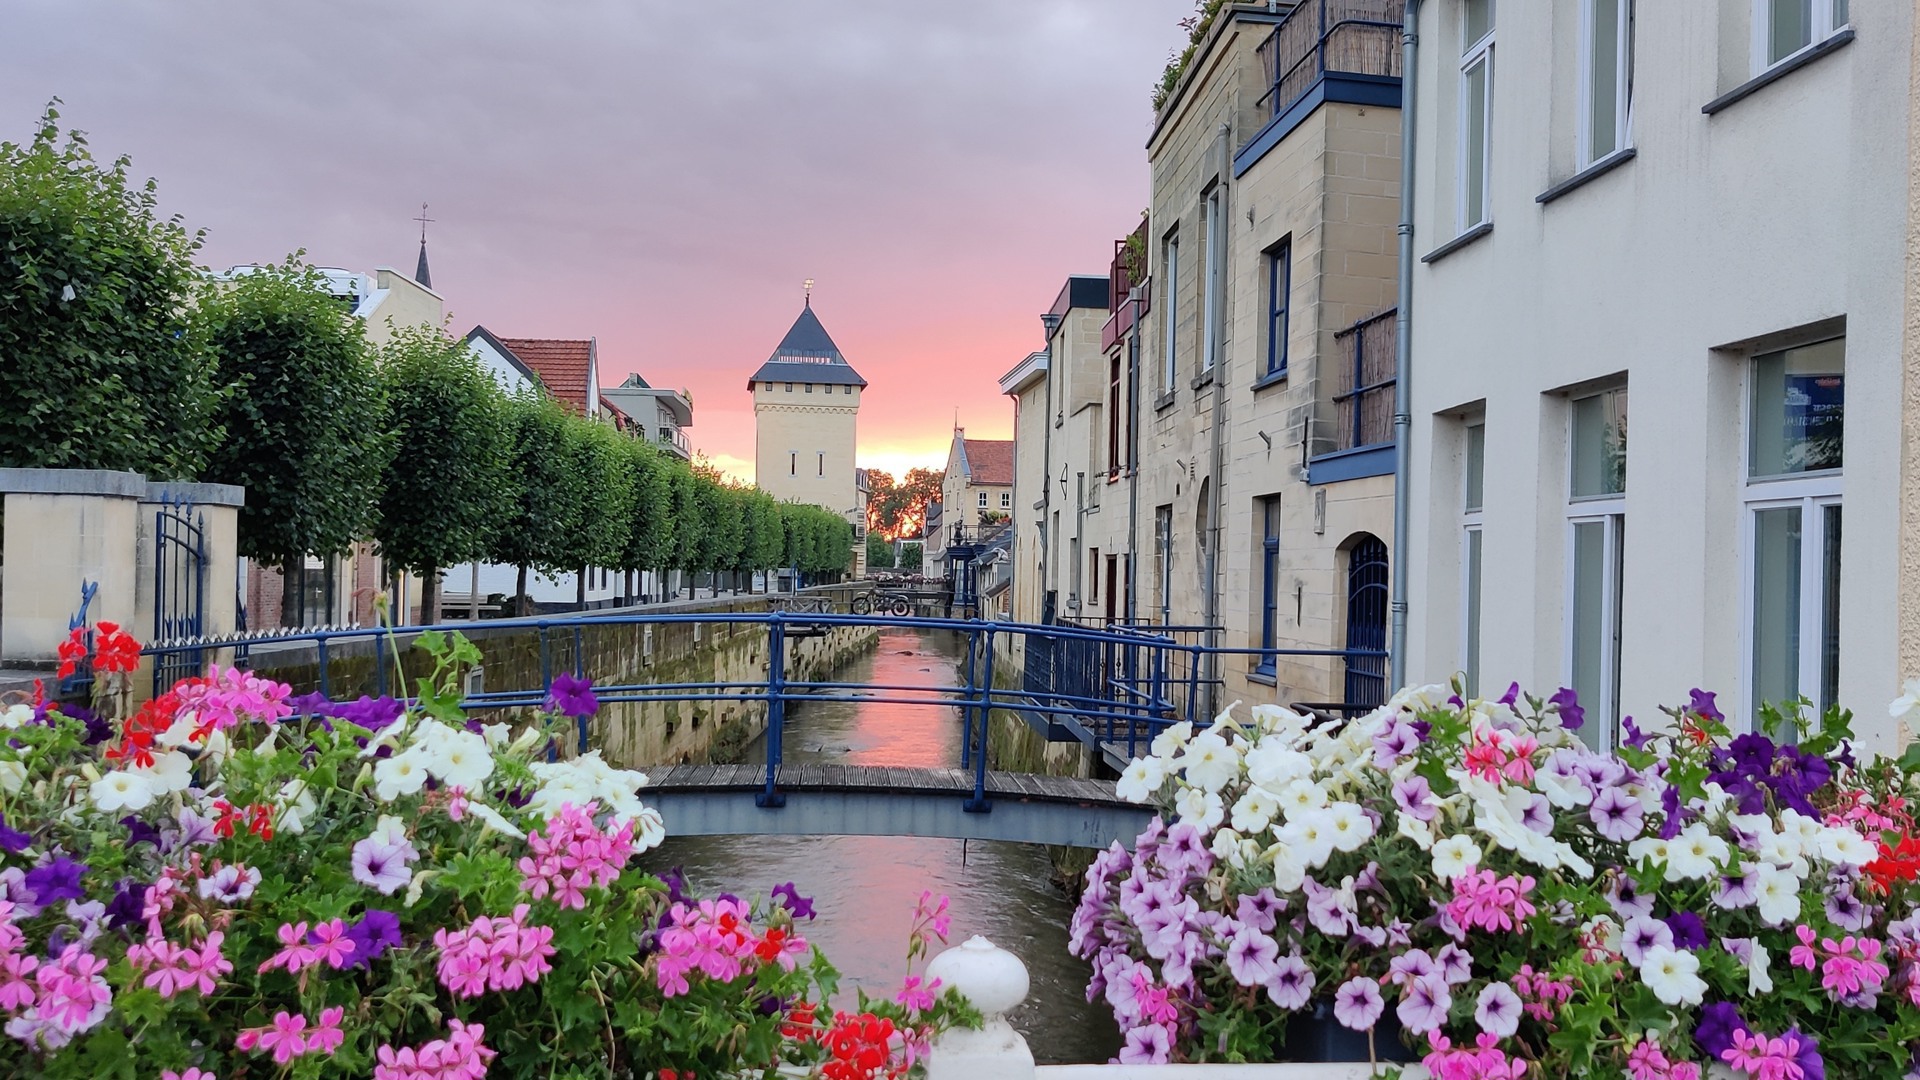 Ontdek de prachtige omgeving van Maastricht!